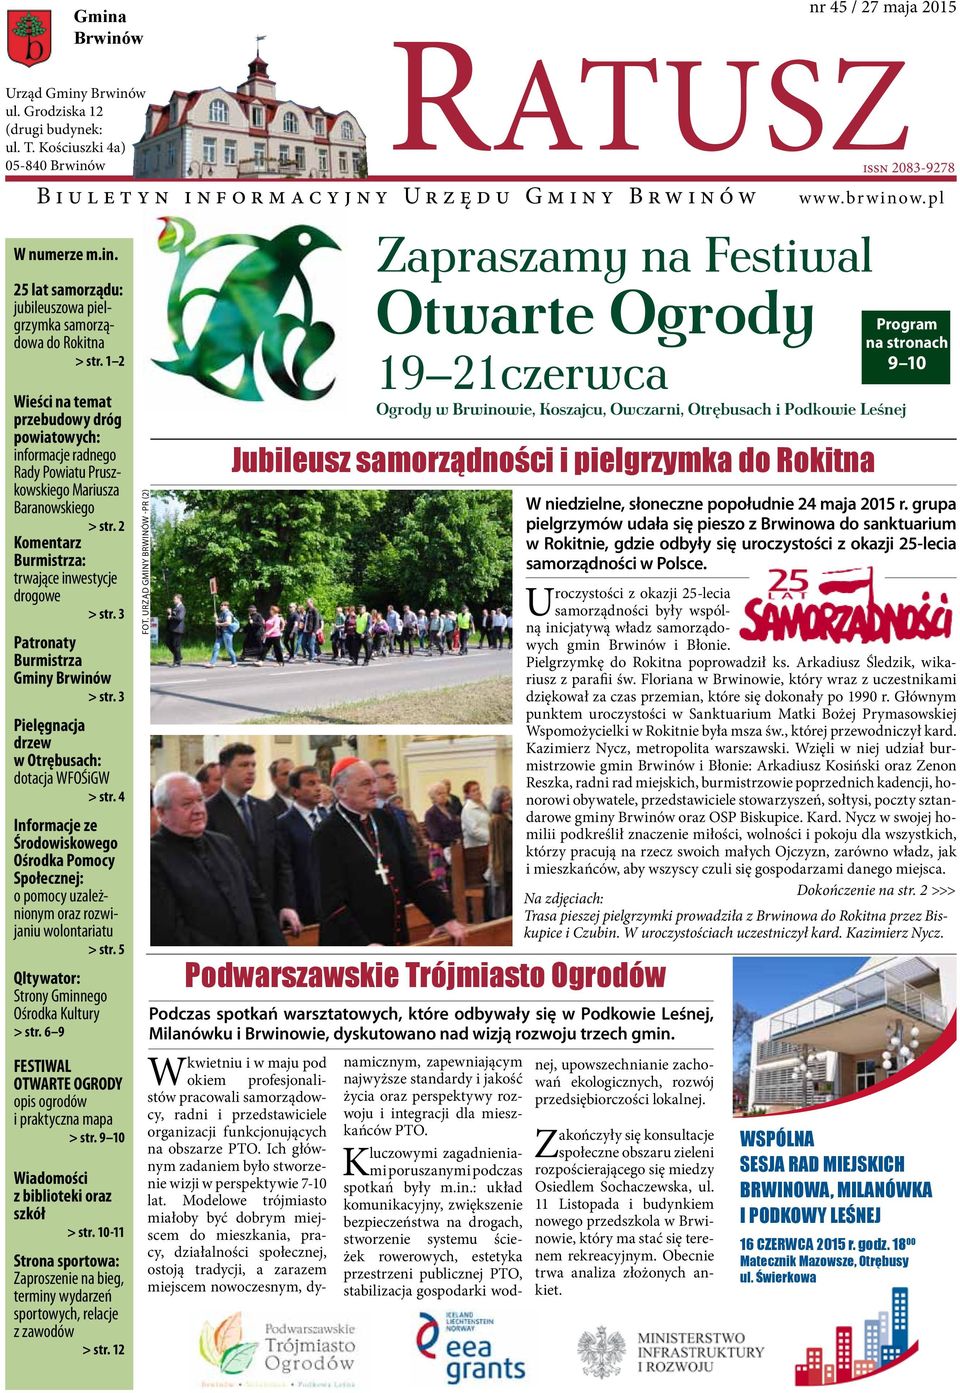 3 Patronaty Burmistrza Gminy Brwinów > str. 3 Pielęgnacja drzew w Otrębusach: dotacja WFOŚiGW > str.